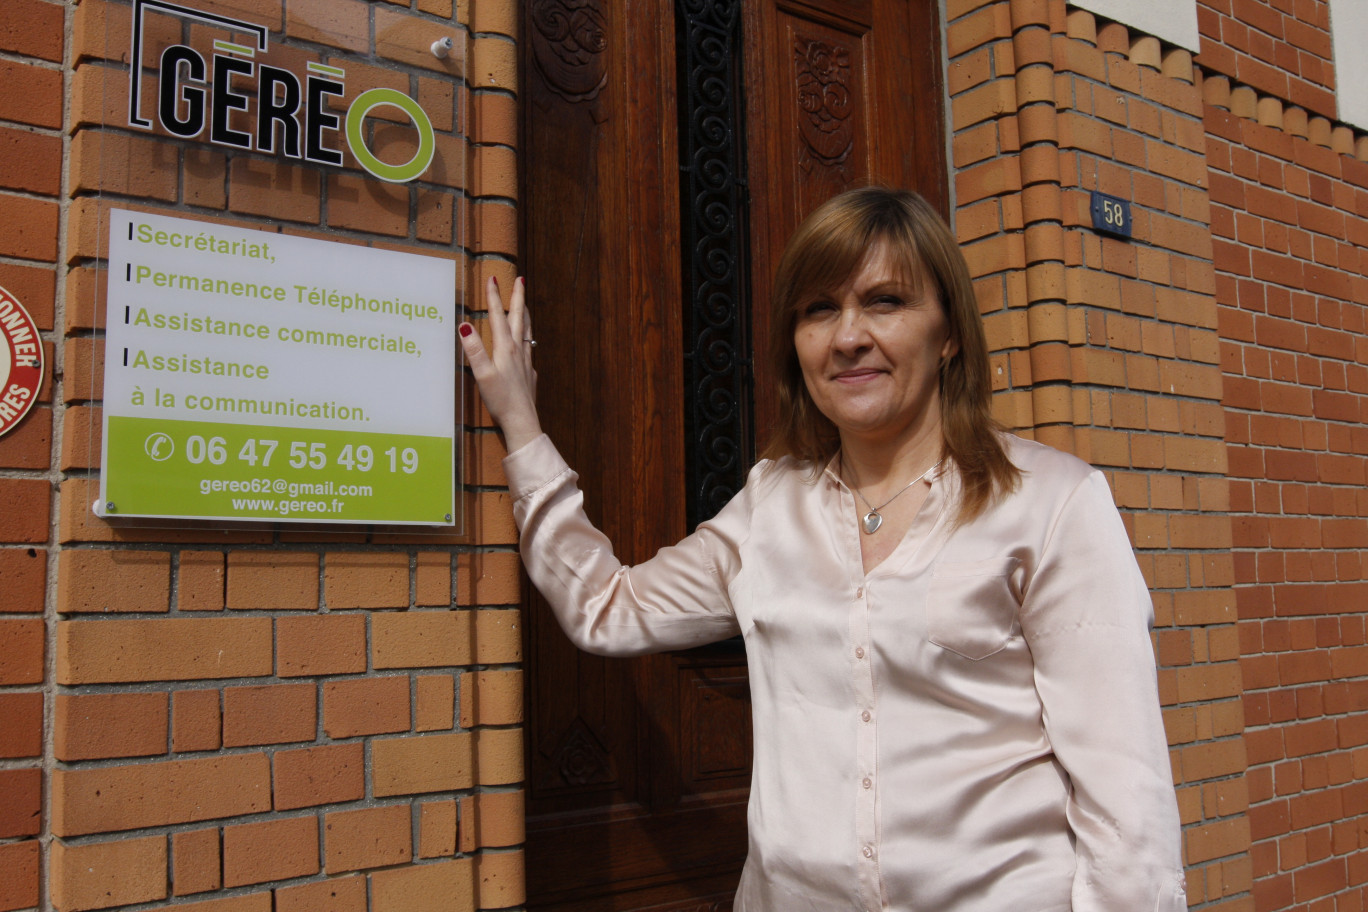 Géréo est une entreprise de secrétariat externalisé implantée à Béthune. A sa tête Murielle Faussier qui a une longue expérience dans ce domaine d’activité.